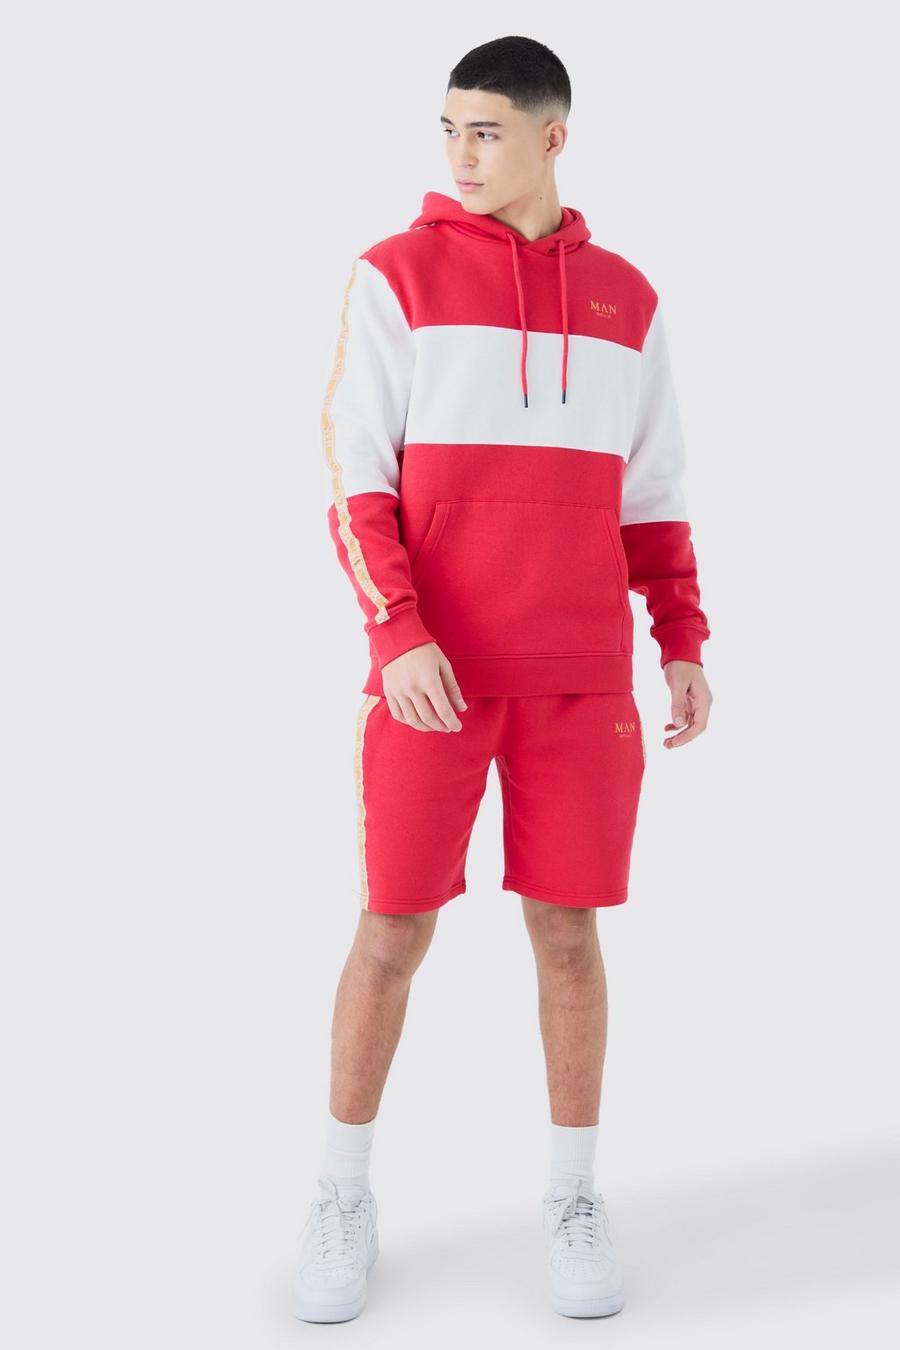 Red MAN Träningsoverall med shorts, blockfärger och kantband